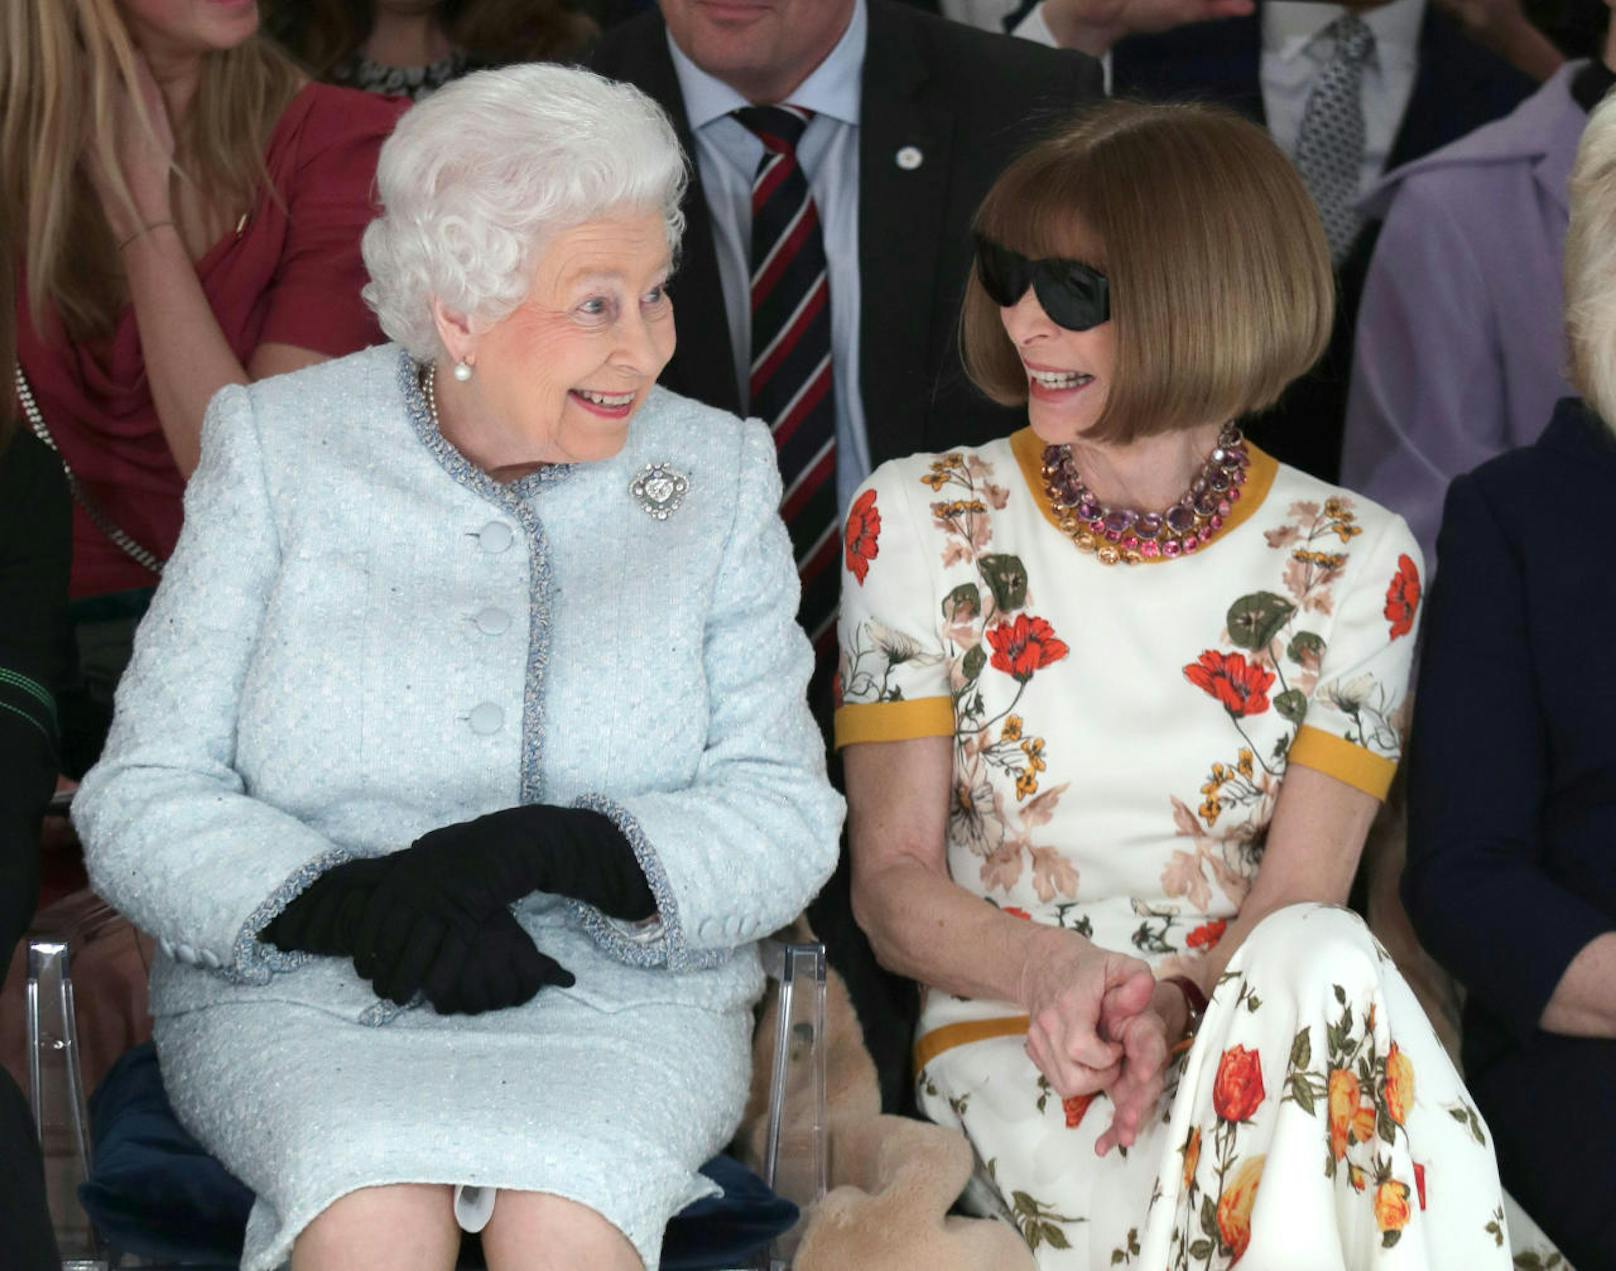 Unglaublich - die Königin der Briten hat ein ganzes Hut-Arsenal. Seit Amtsantritt hat Elizabeth II. 5000 (!) Hüte gesammelt. Foto: 
2018 besuchte die Queen die Londoner Fashion Week - und saß in der Front Row neben Anna Wintour.